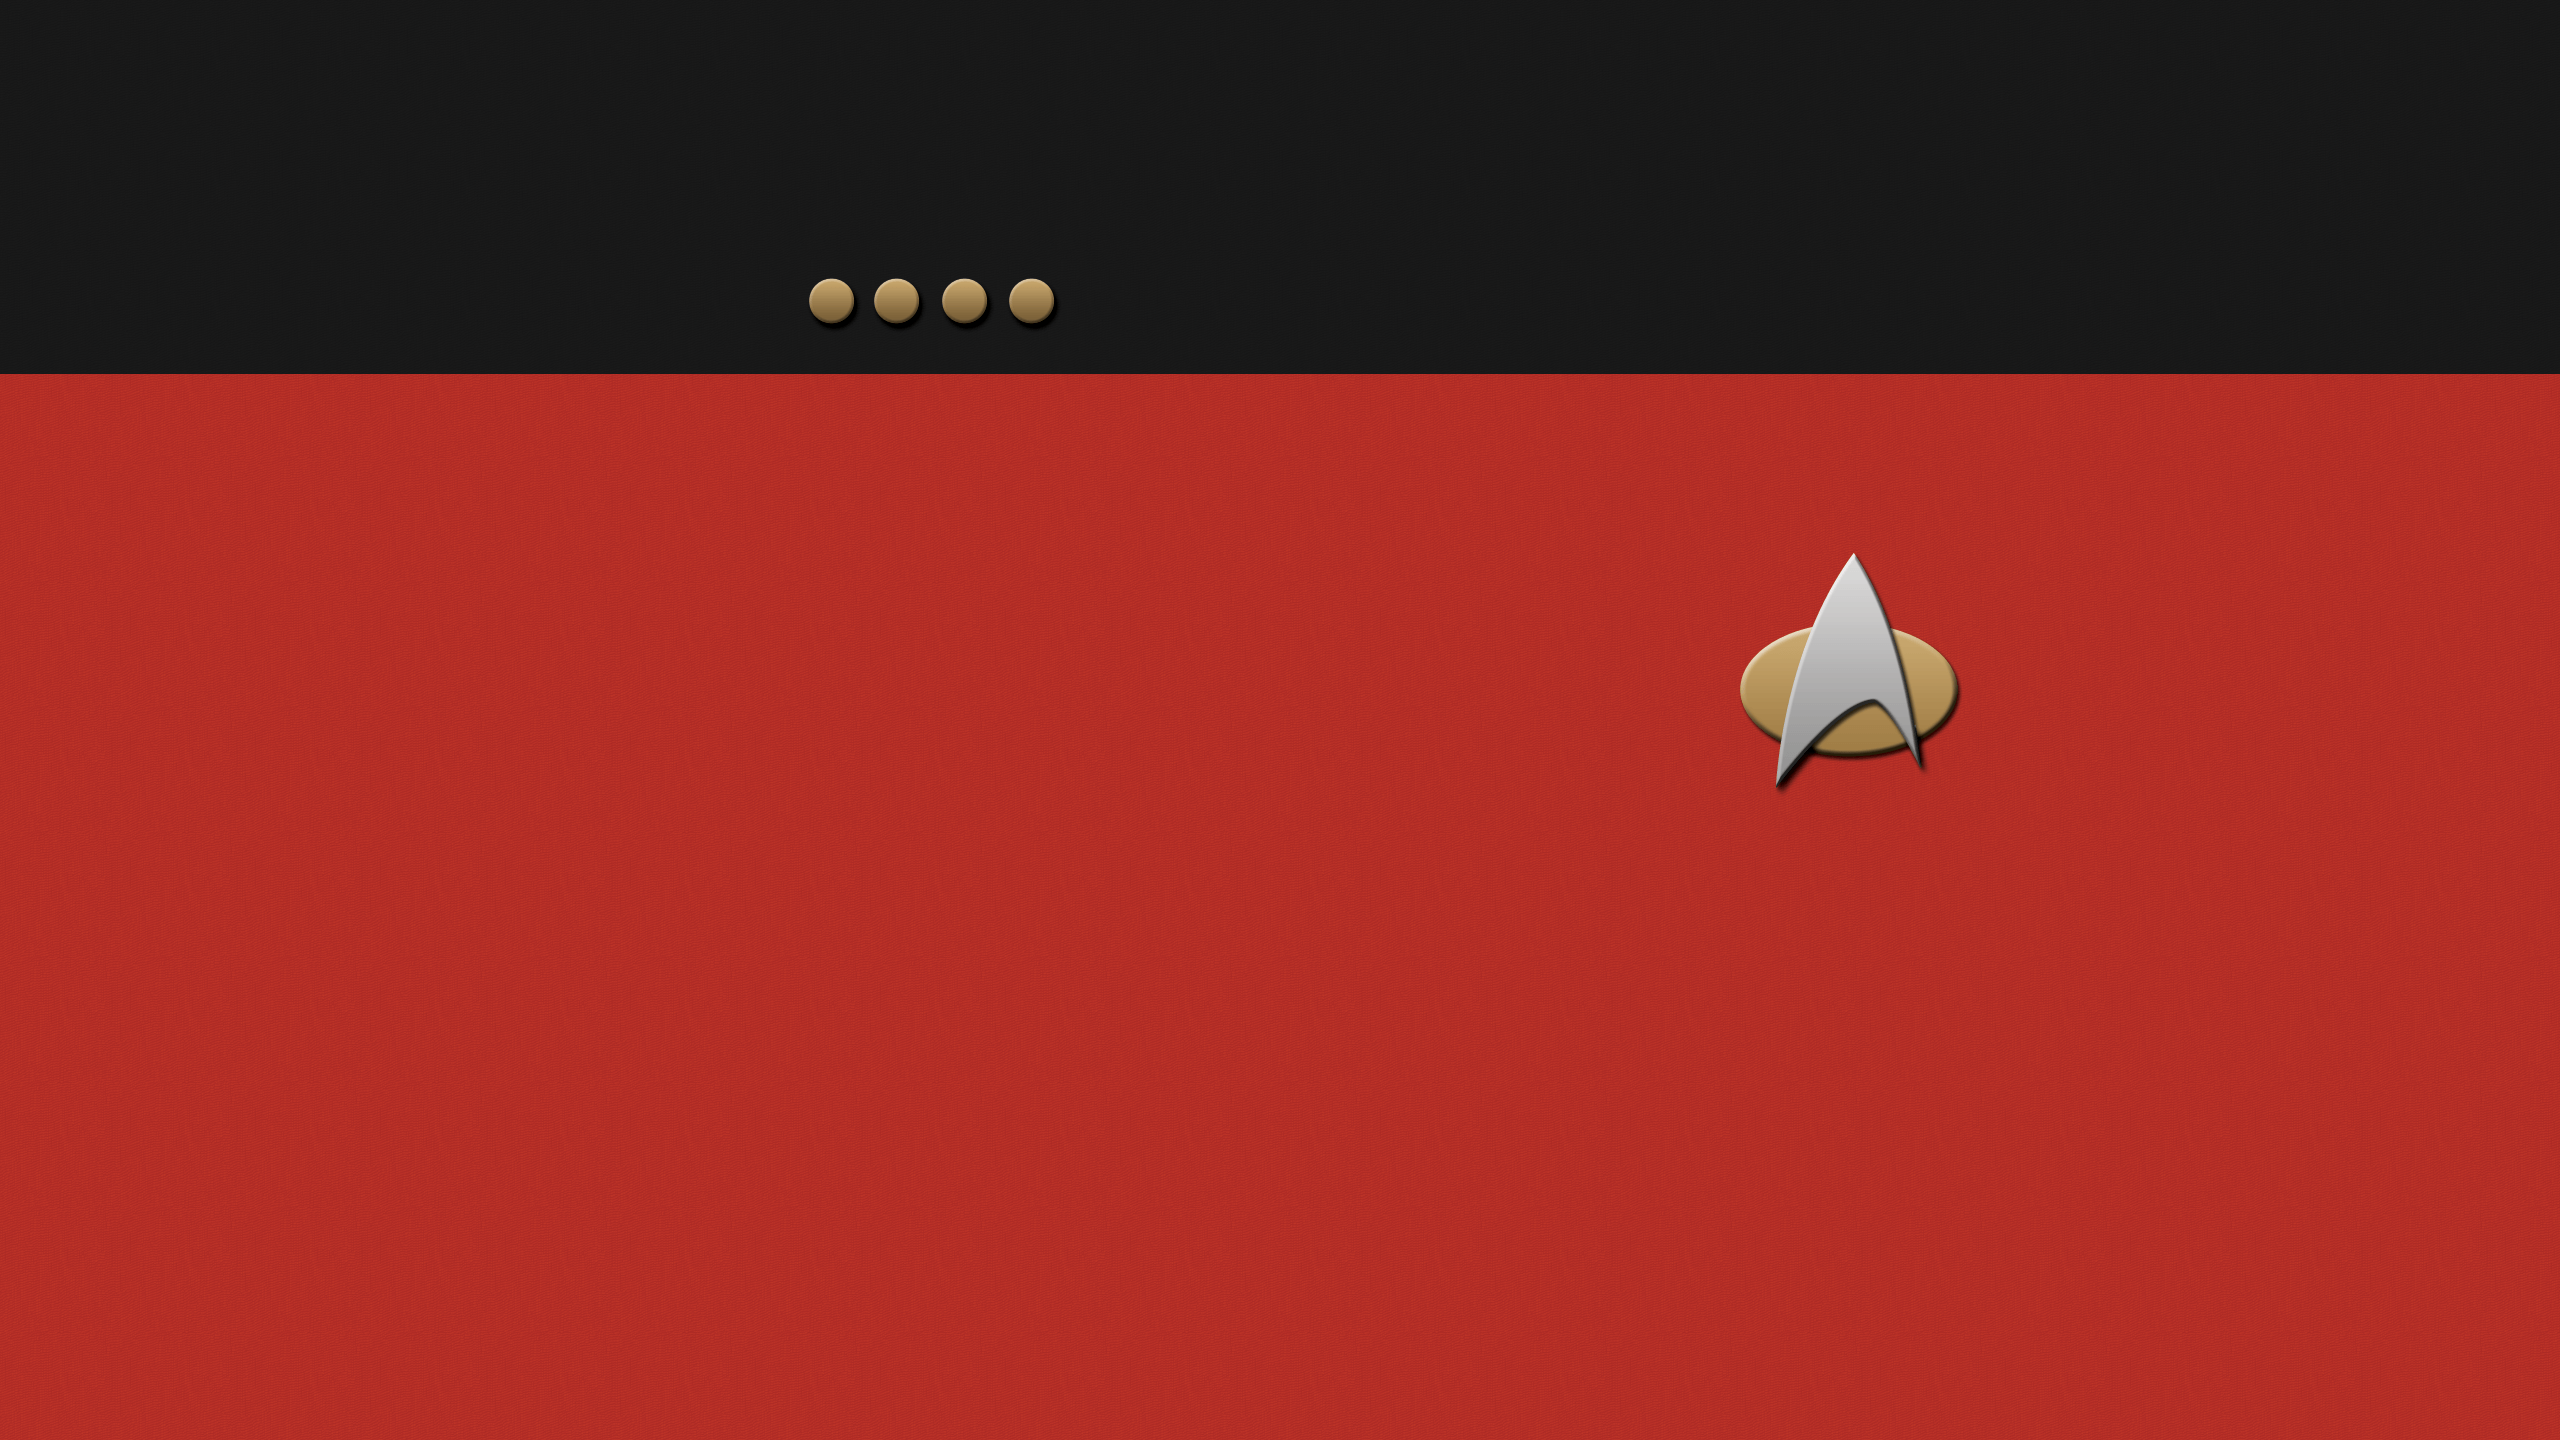 Minimalist Star Trek Wallpaper Free Minimalist Star Trek Background